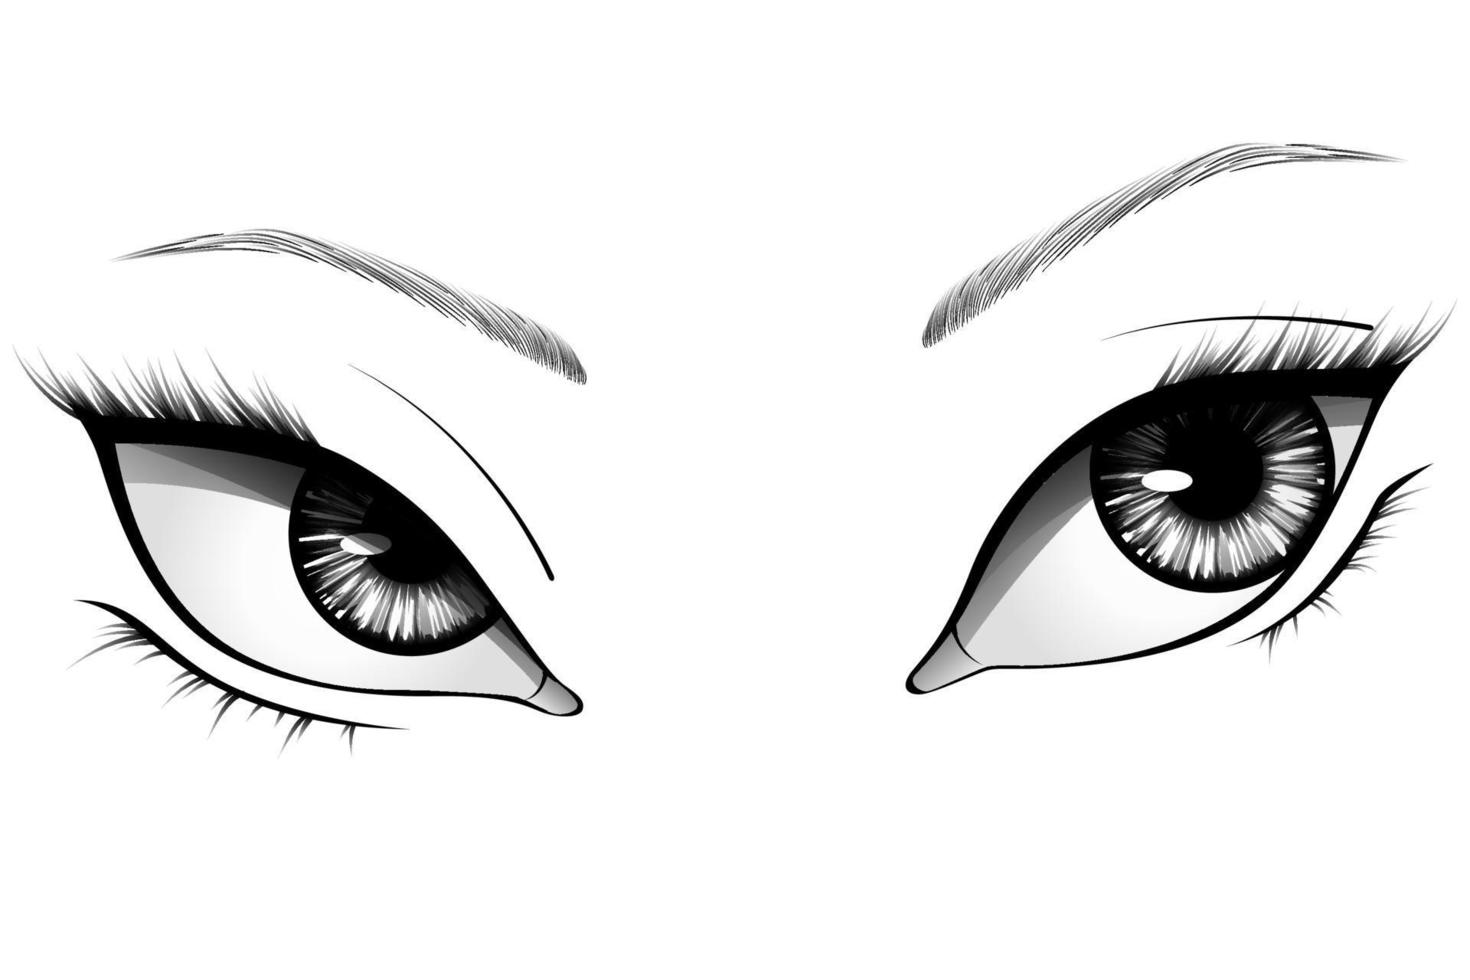 Ojos de mujer de dibujos animados dibujados a mano con iris detallado,  cejas y pestañas. ilustración vectorial de tipografía 4852229 Vector en  Vecteezy